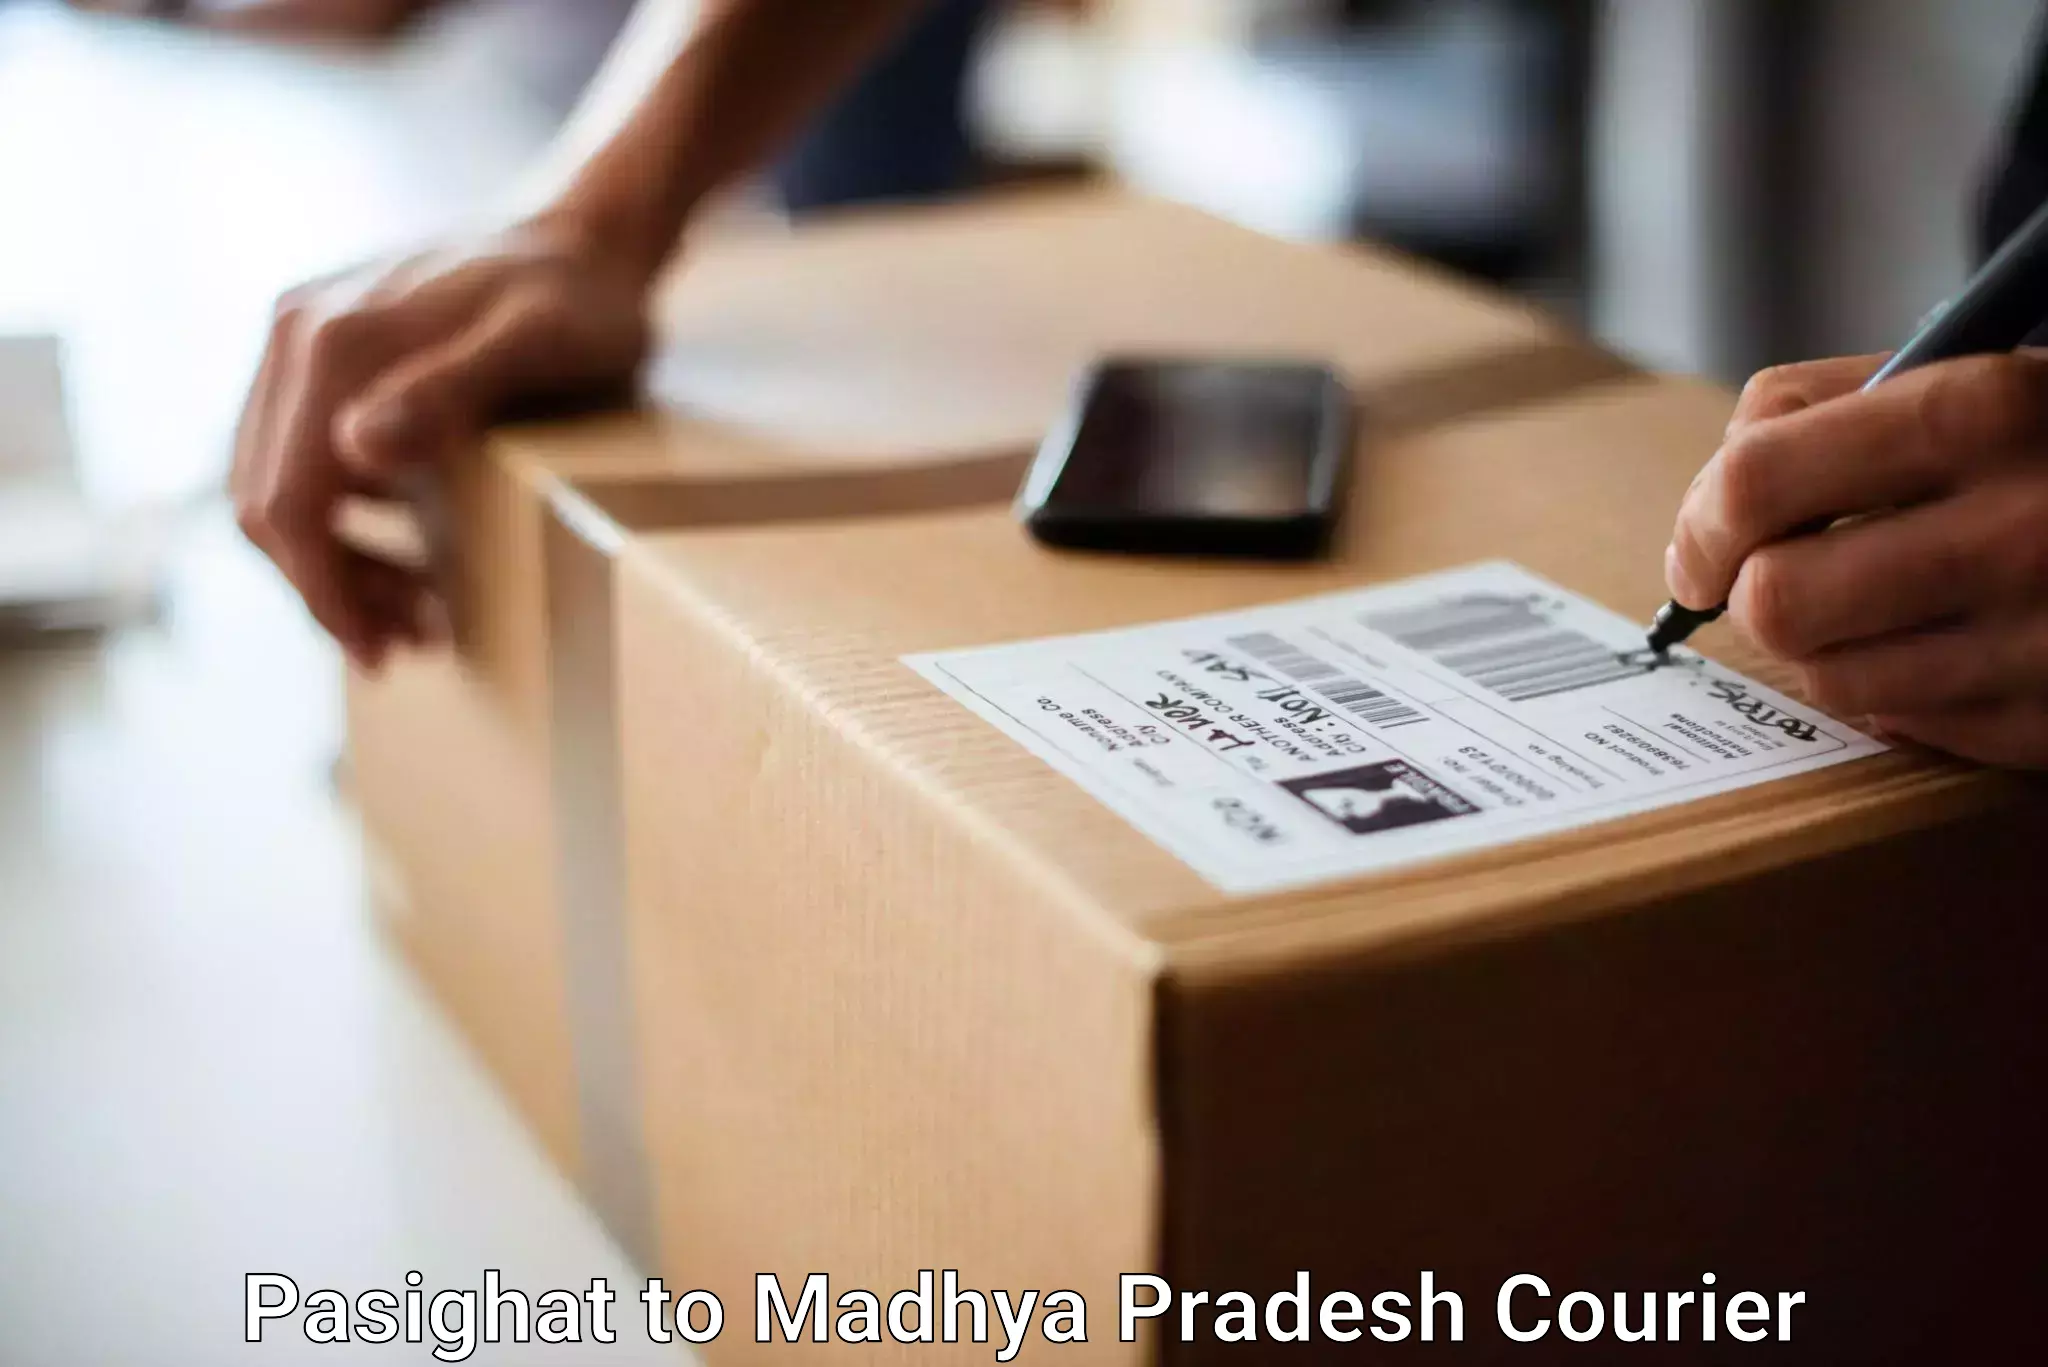 Luggage shipment tracking Pasighat to Gadarwara